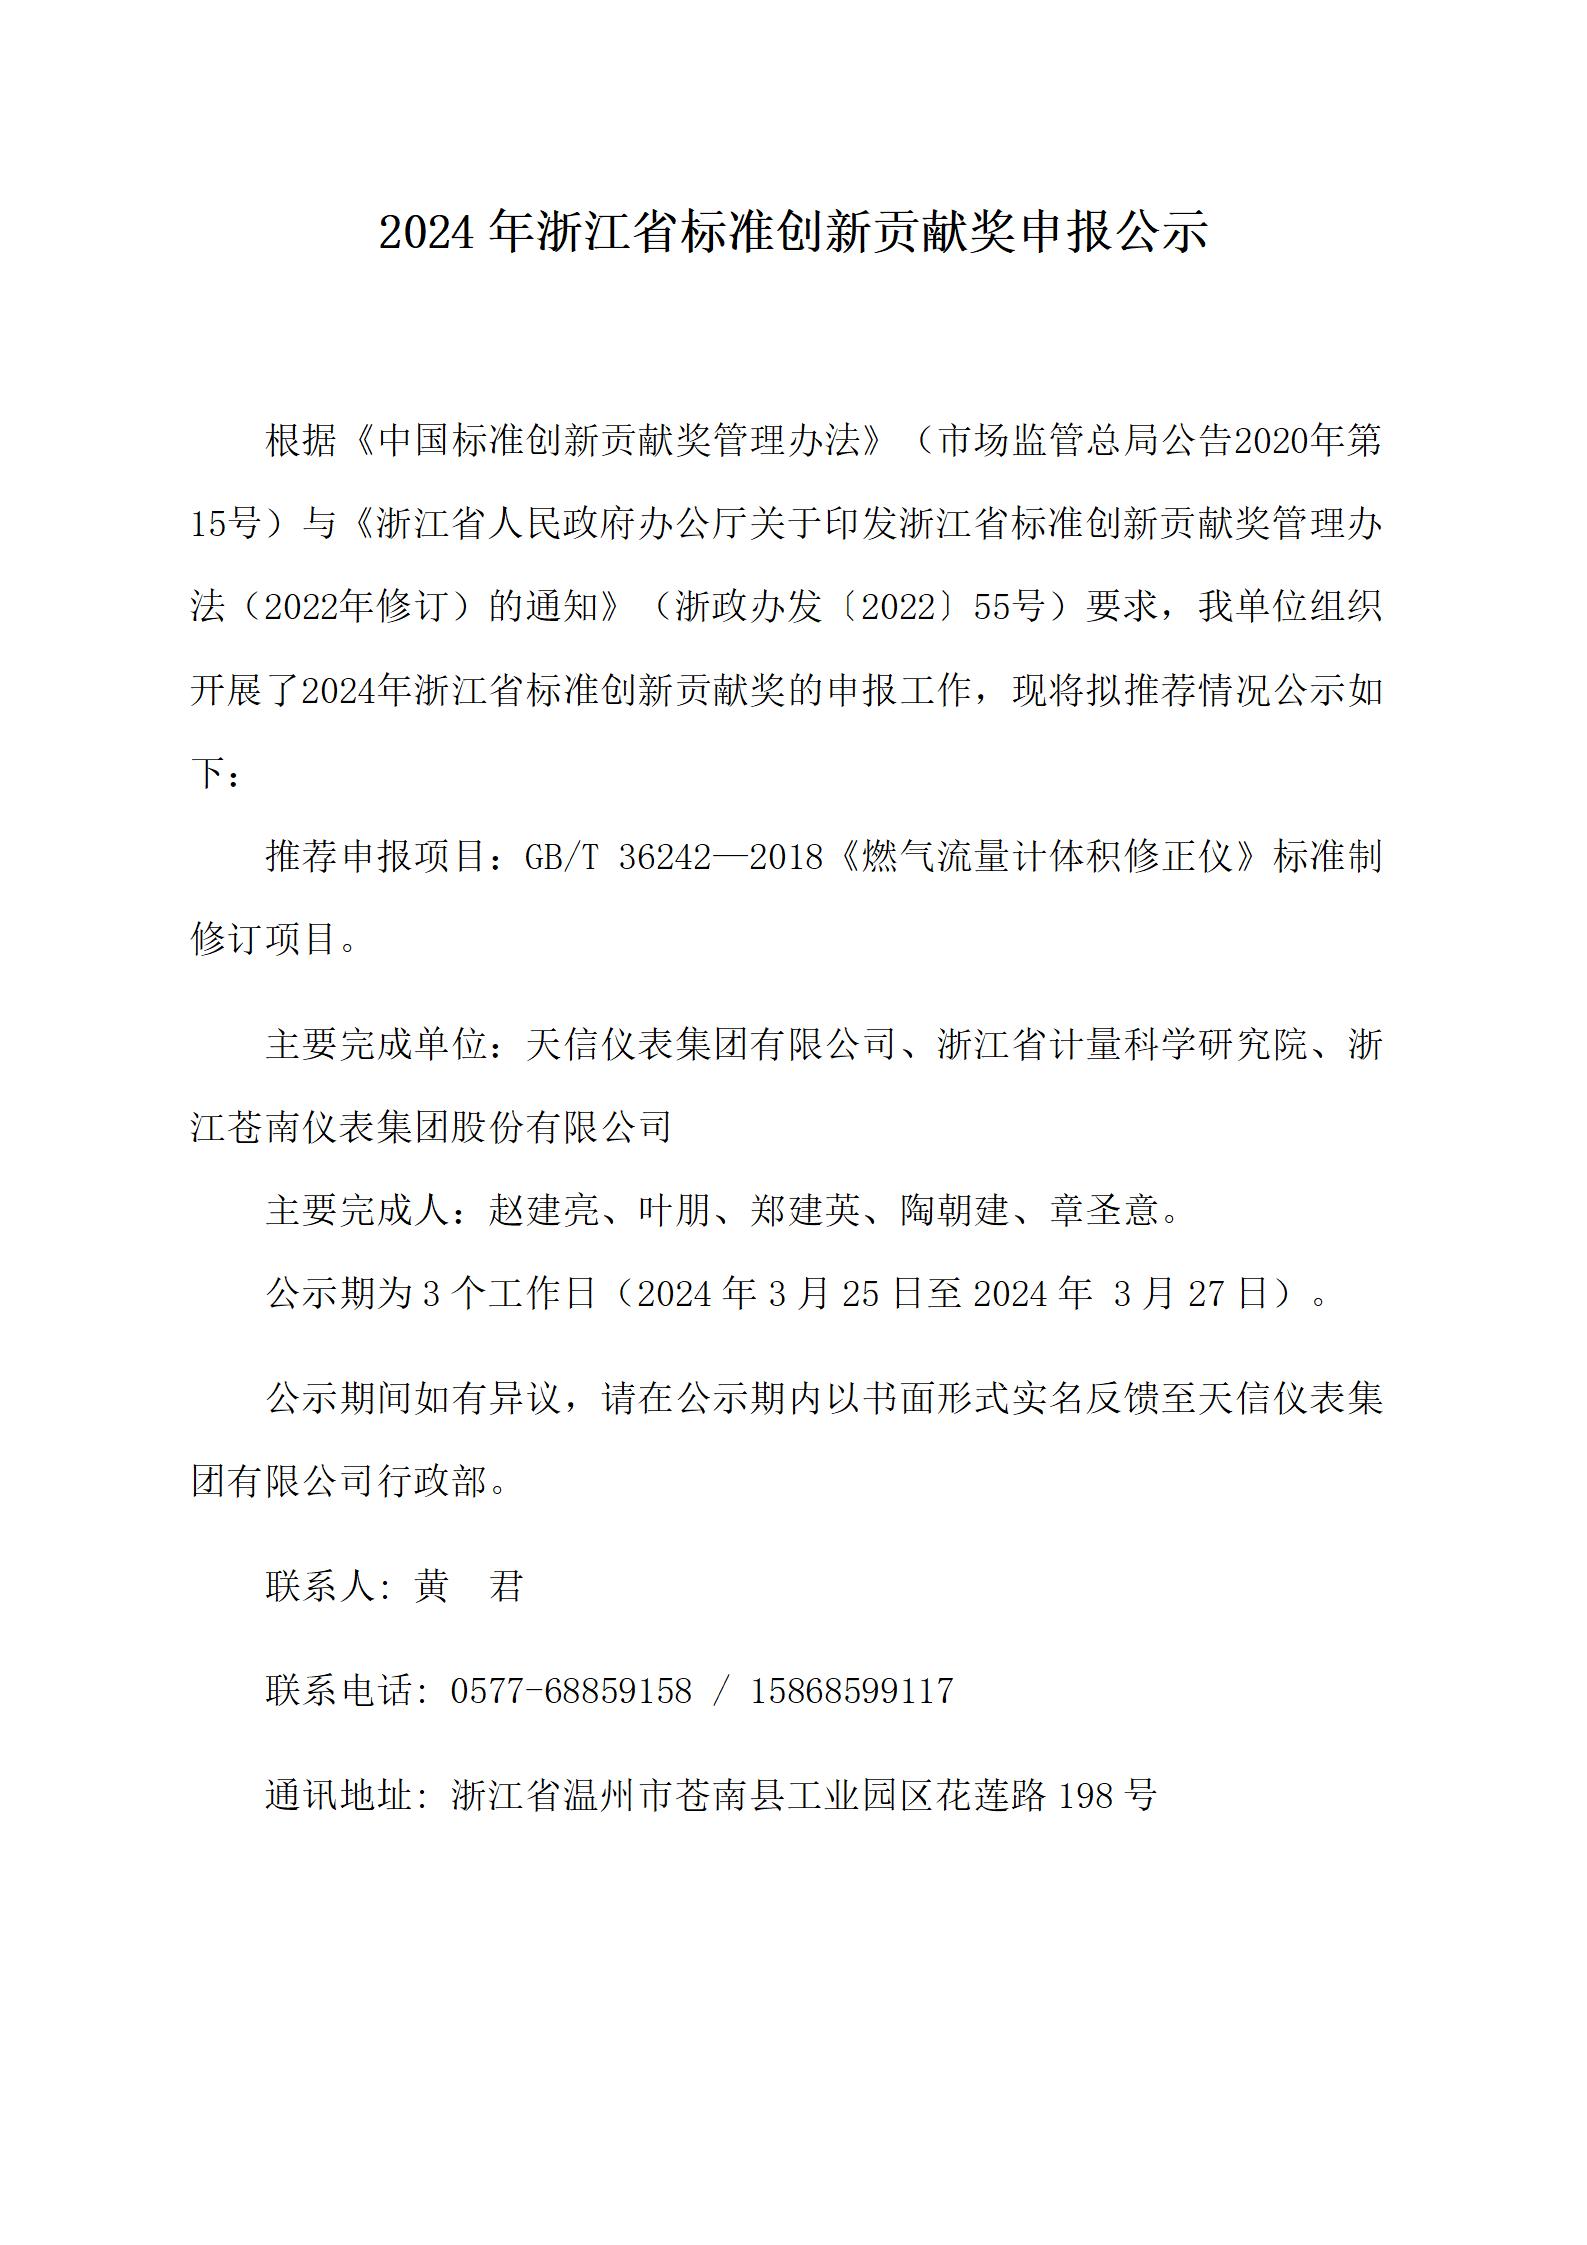 附件2：浙江省标准创新贡献奖申报公示--20240323（天信版2）_01.jpg